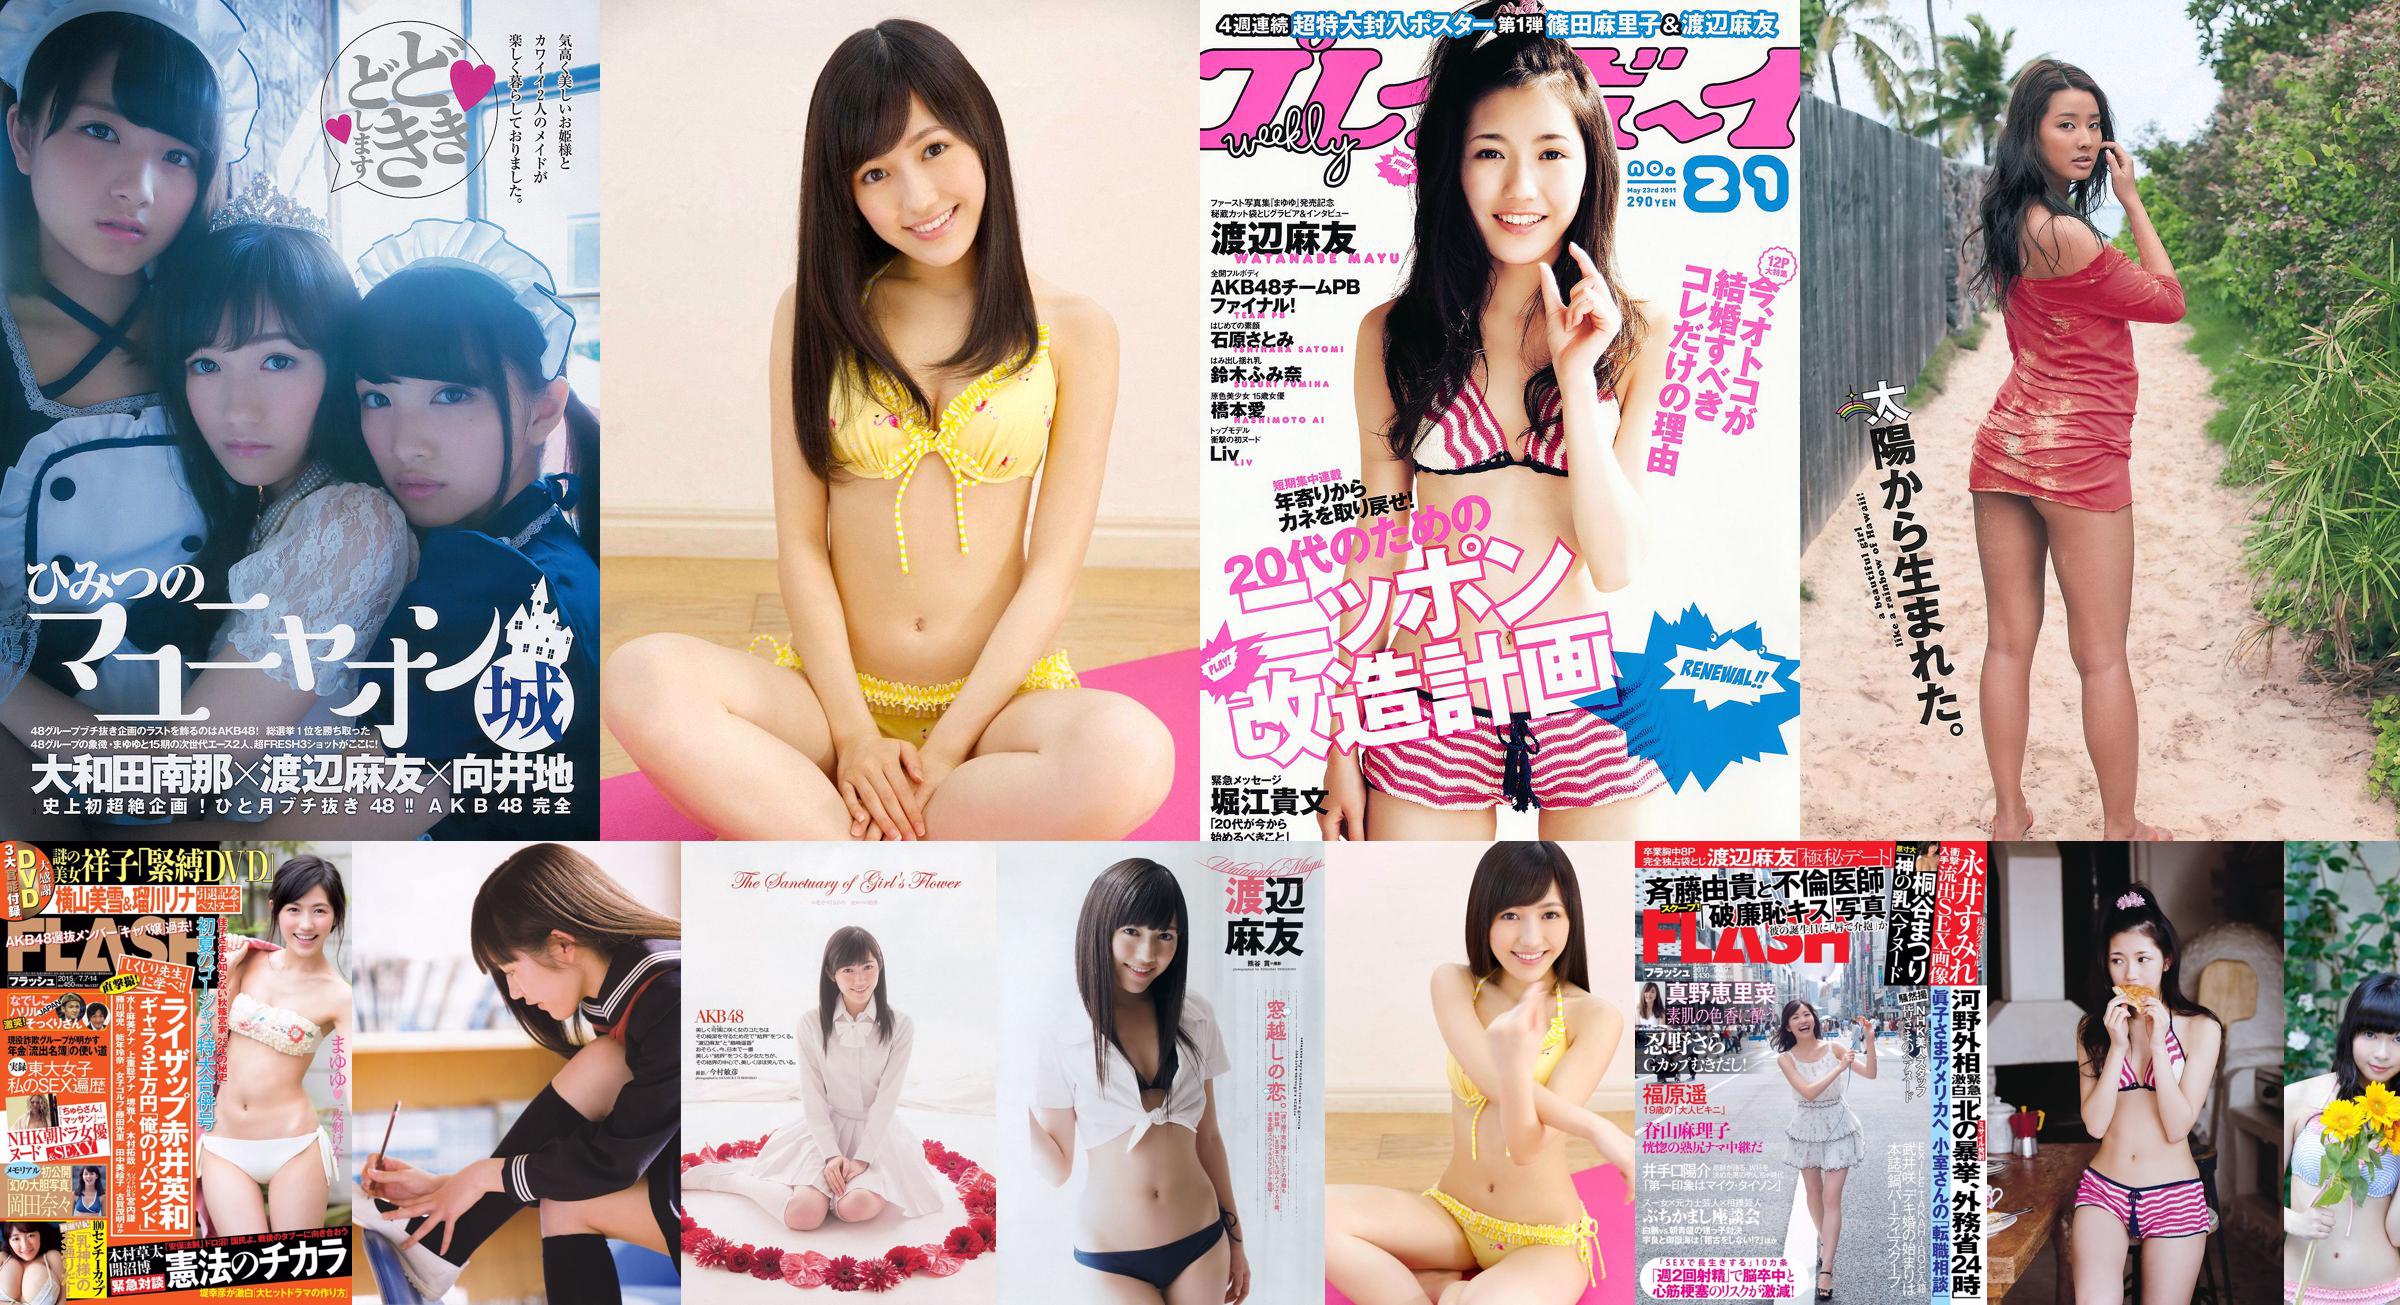 Mayu Watanabe Haruka Shimazaki Ruriko Kojima Riho Iida Naabo Tofu @ Nana [Playboy settimanale] 2013 No.09 Foto Toshi No.a48727 Pagina 5